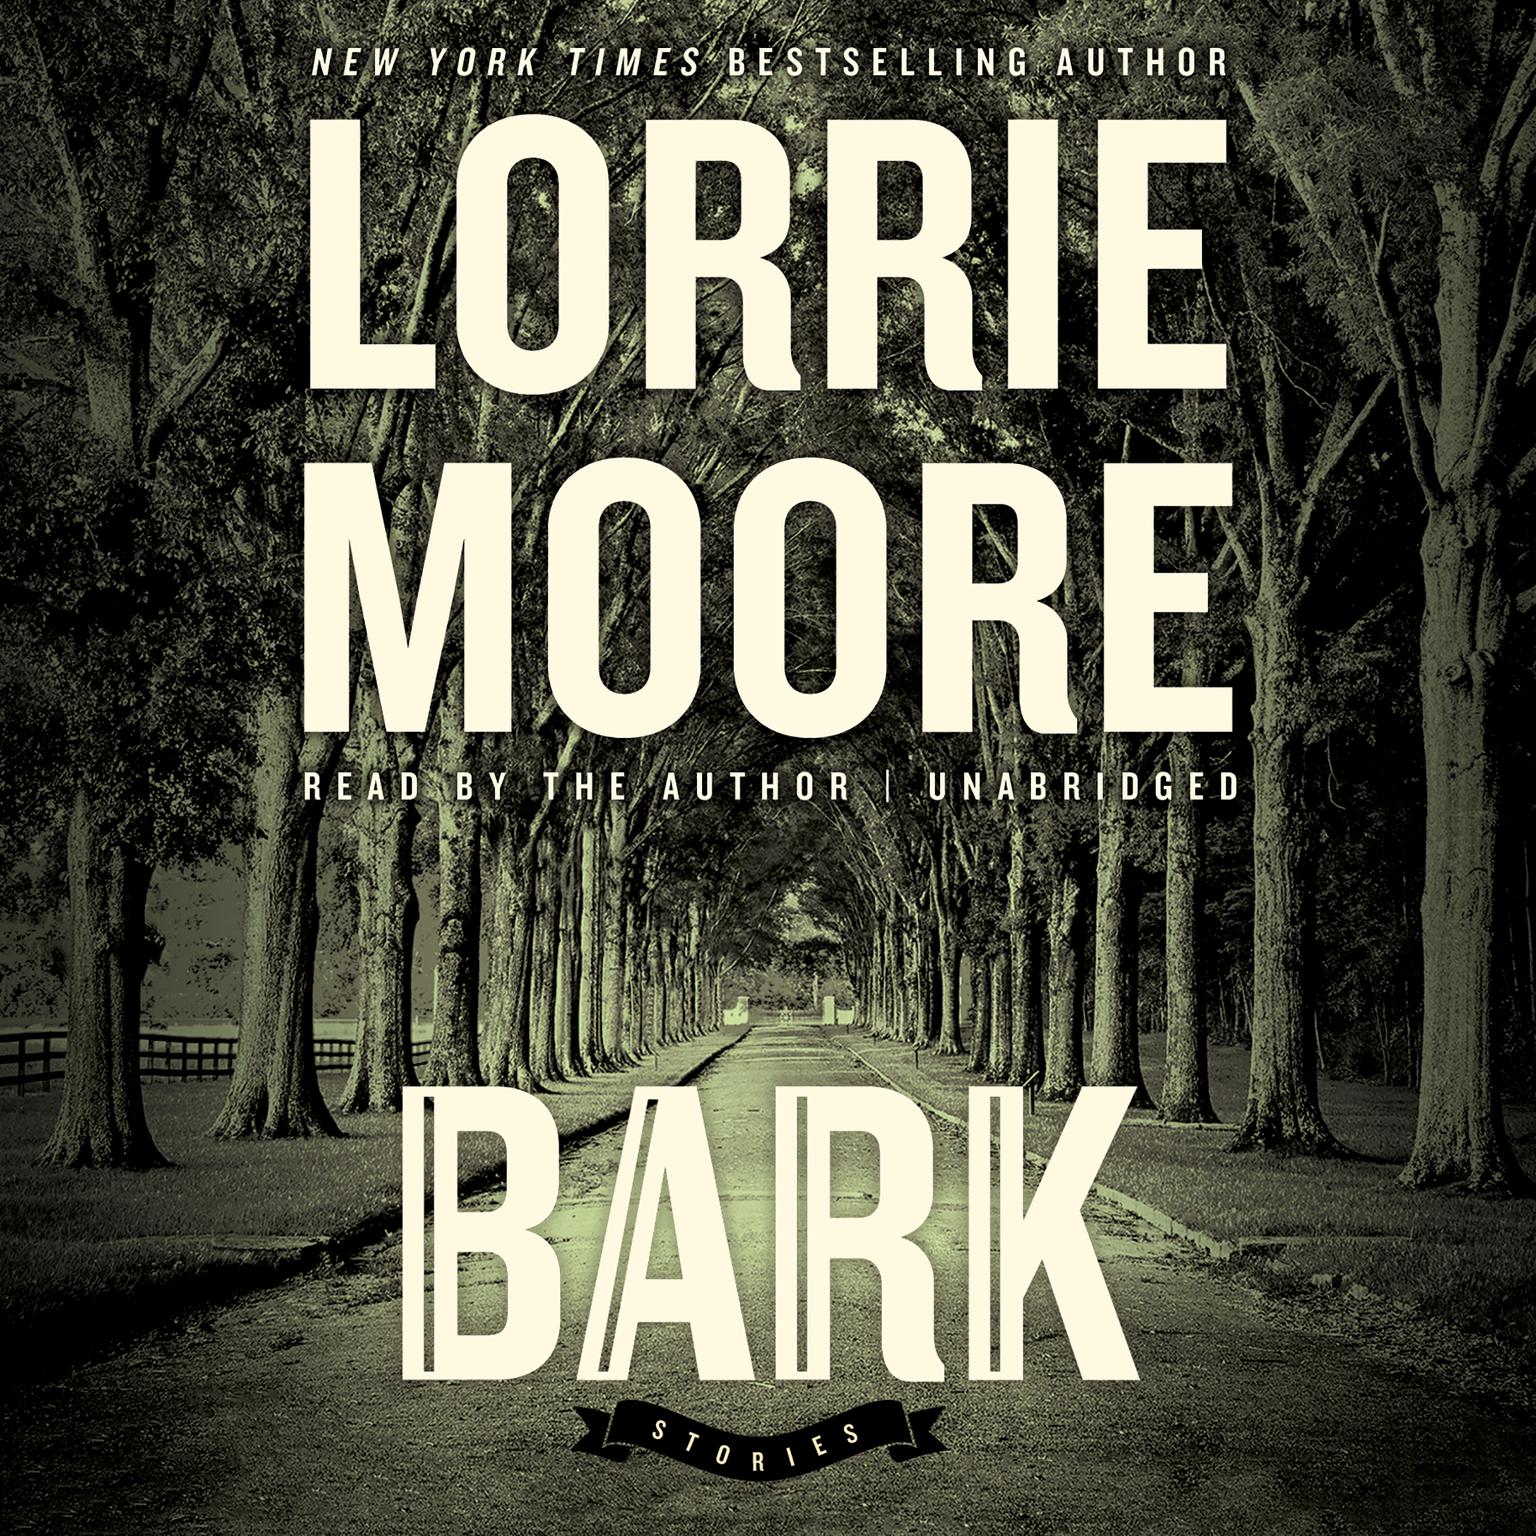 Bark: Stories Audiobook, by Lorrie Moore